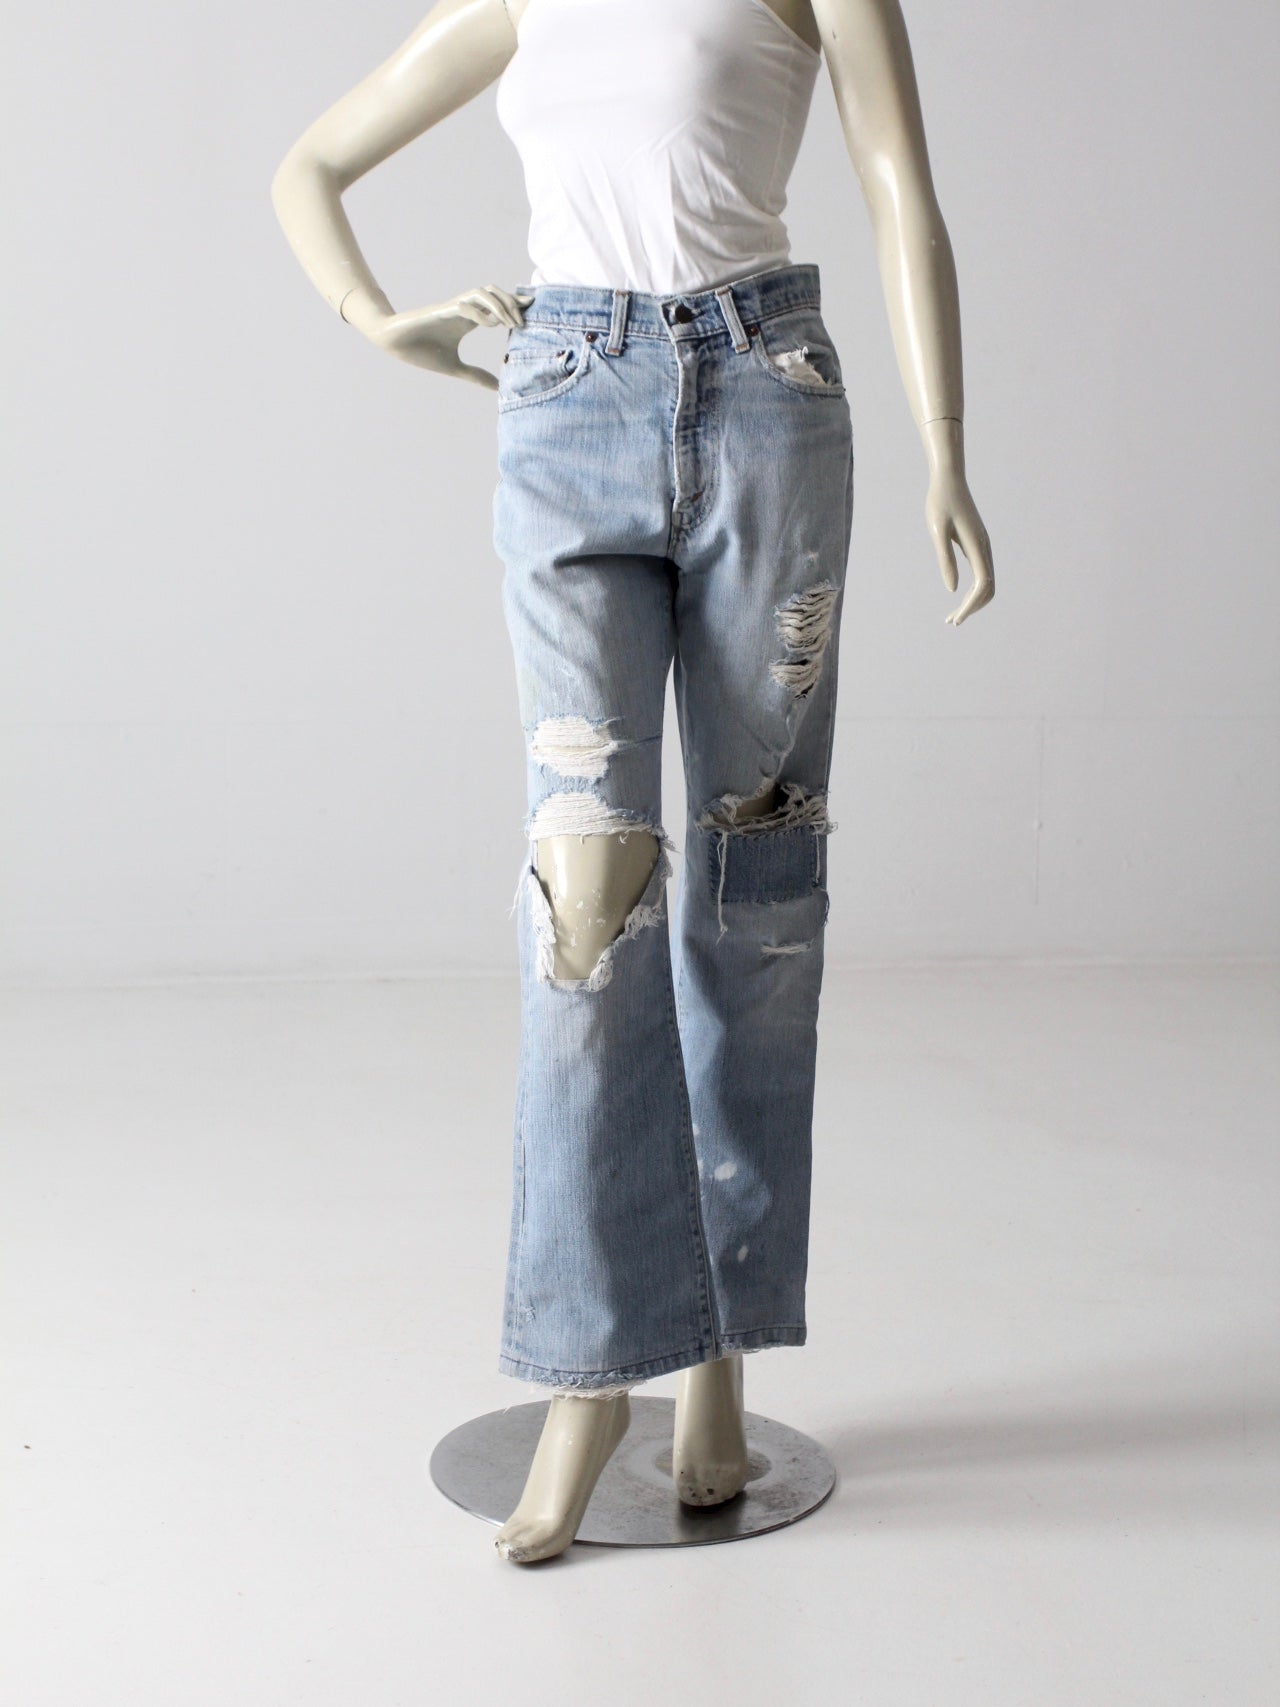 vintage Levis 517 distressed jeans, 31 x 31